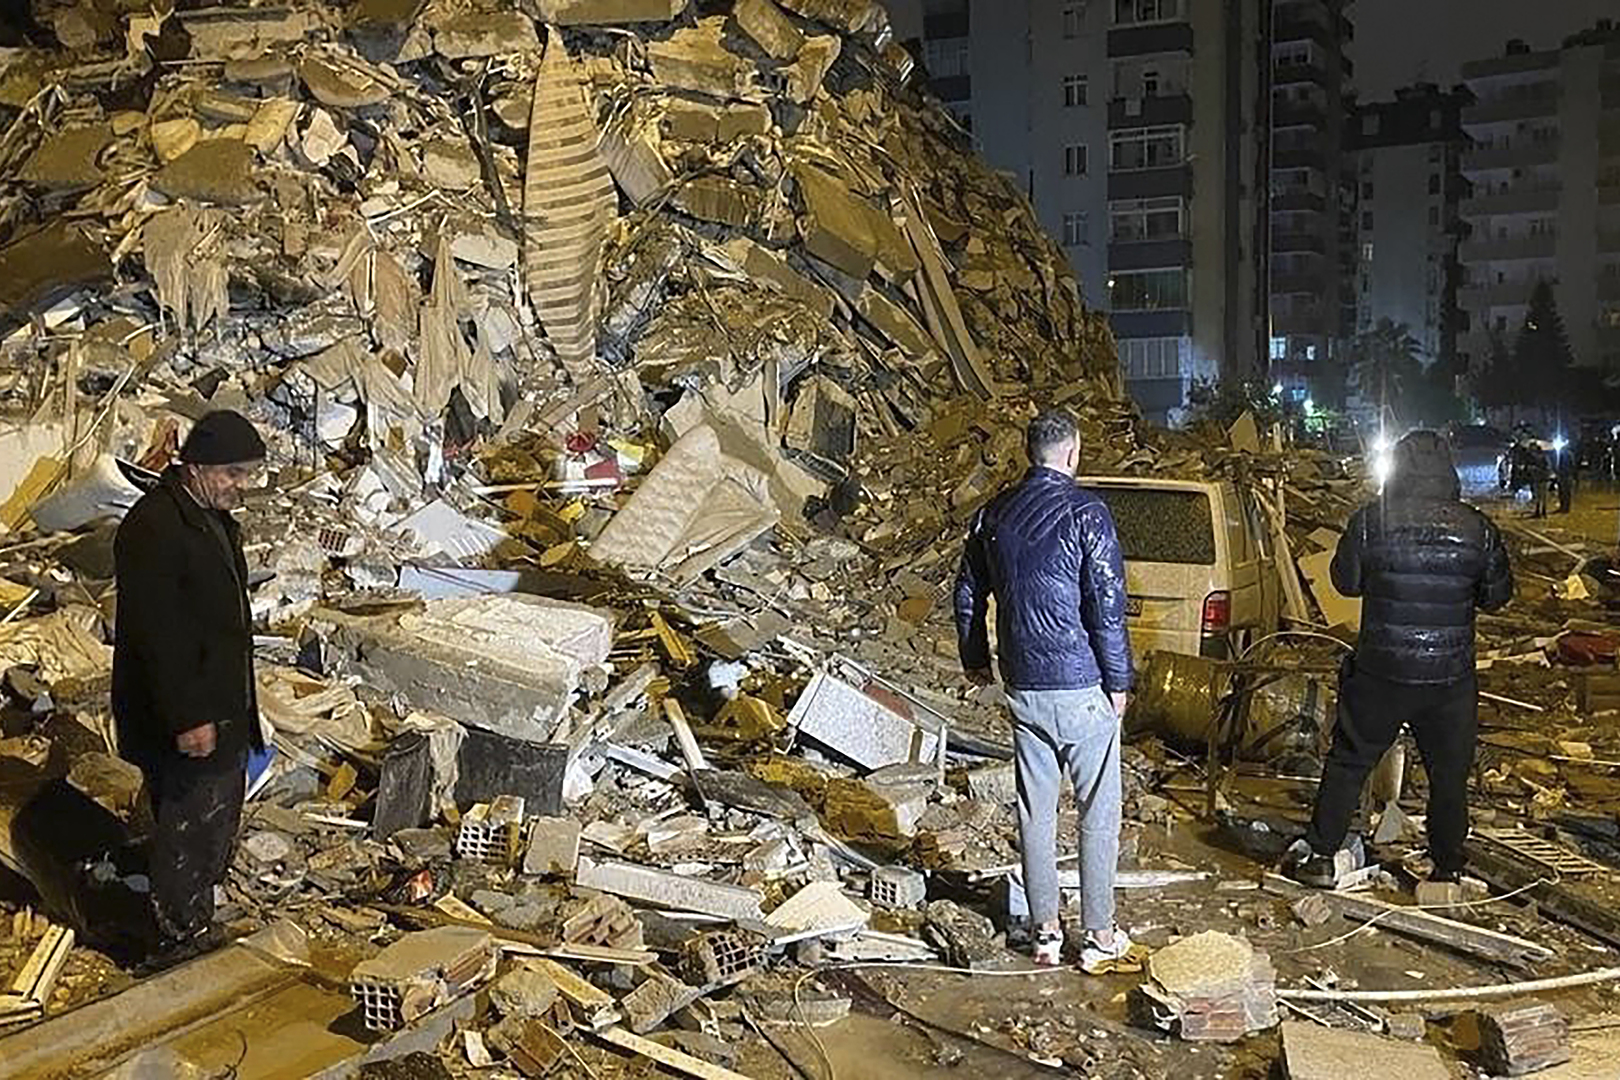 زلزالين أقوى من زلزال تركيا المدمر يضربان الأرضزلزالين أقوى من زلزال تركيا المدمر يضربان الأرض